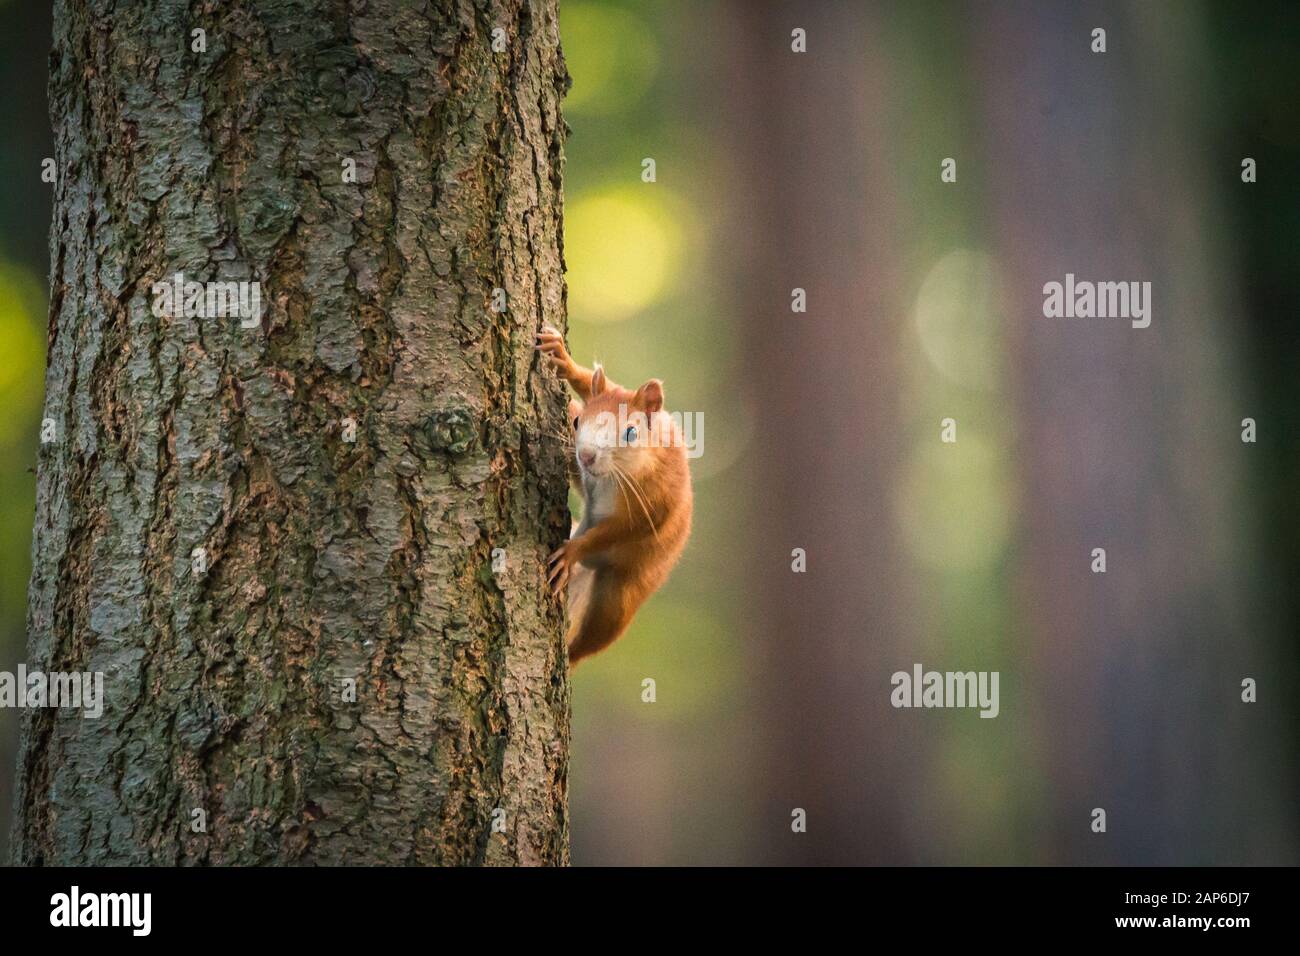 Portrait von Eichhörnchen auf dem Baumstamm. Konzepte Für Die Tierwelt. Fotografie von wilden Tieren, die mit Fotografen spielen und posieren. Natürliches Licht. Stepanka Stockfoto